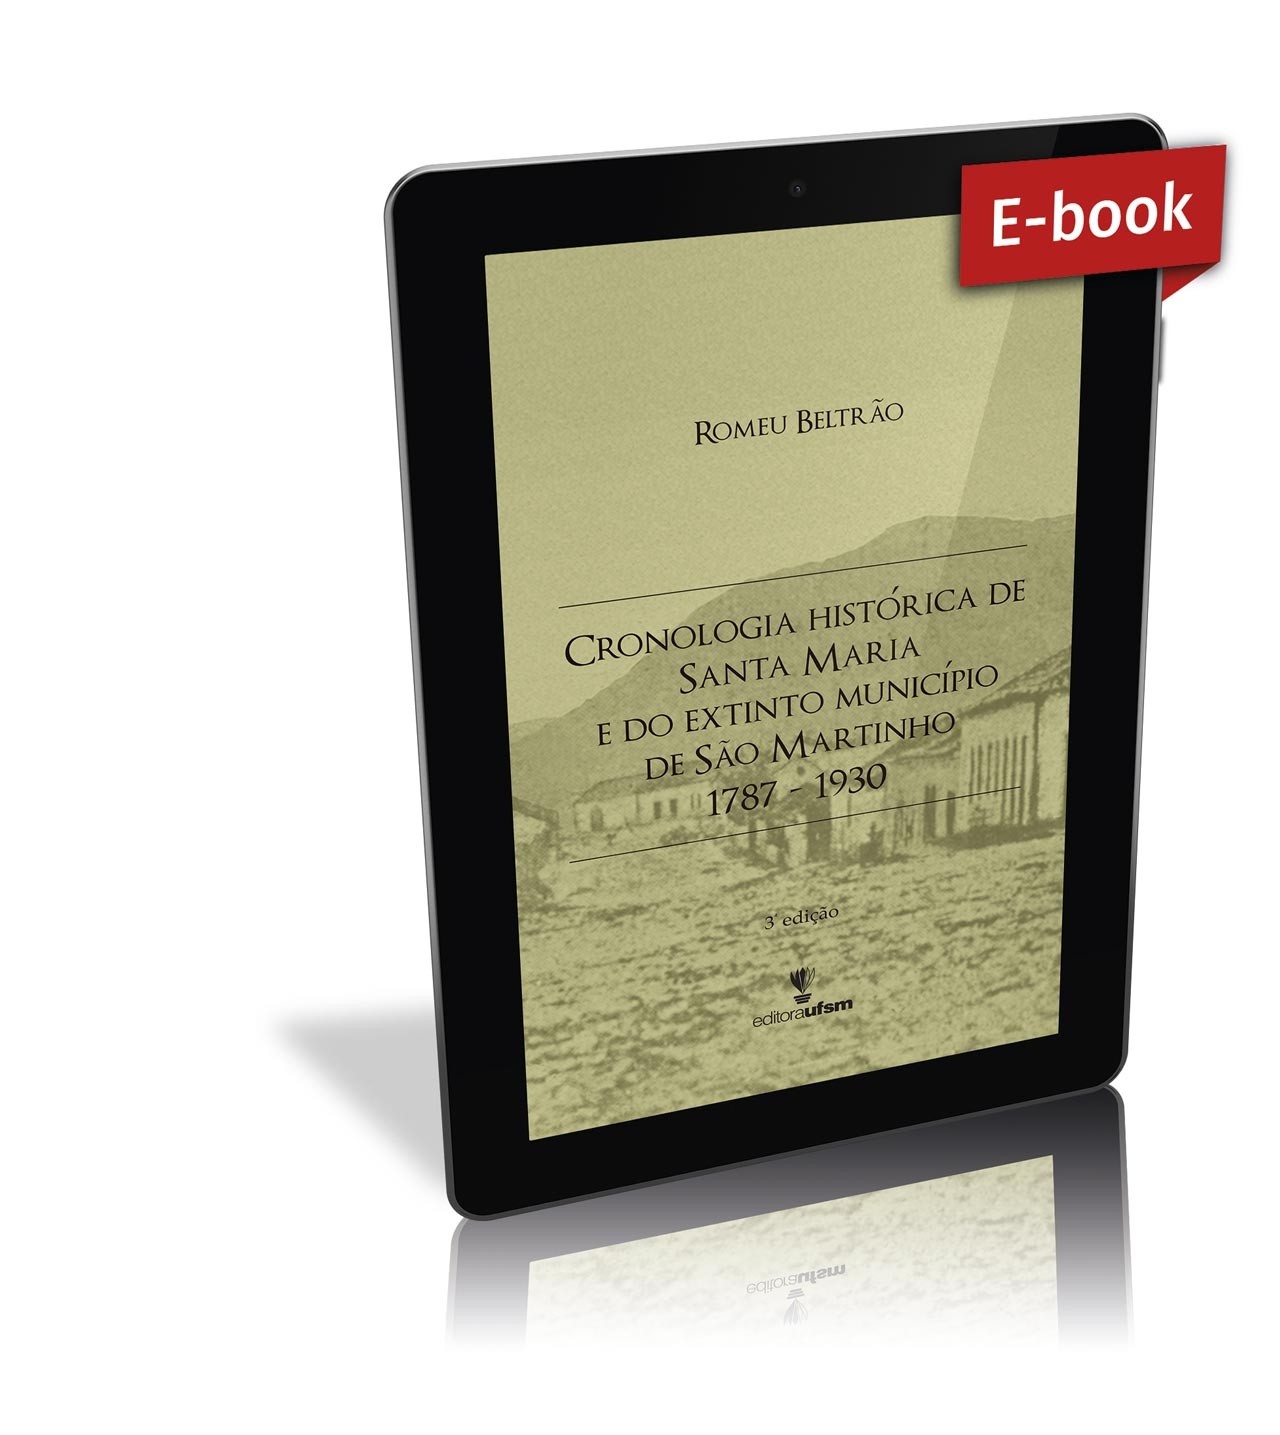 Capa do e-book Cronologia Histórica de Santa Maria e do Extinto Município de São Martinho